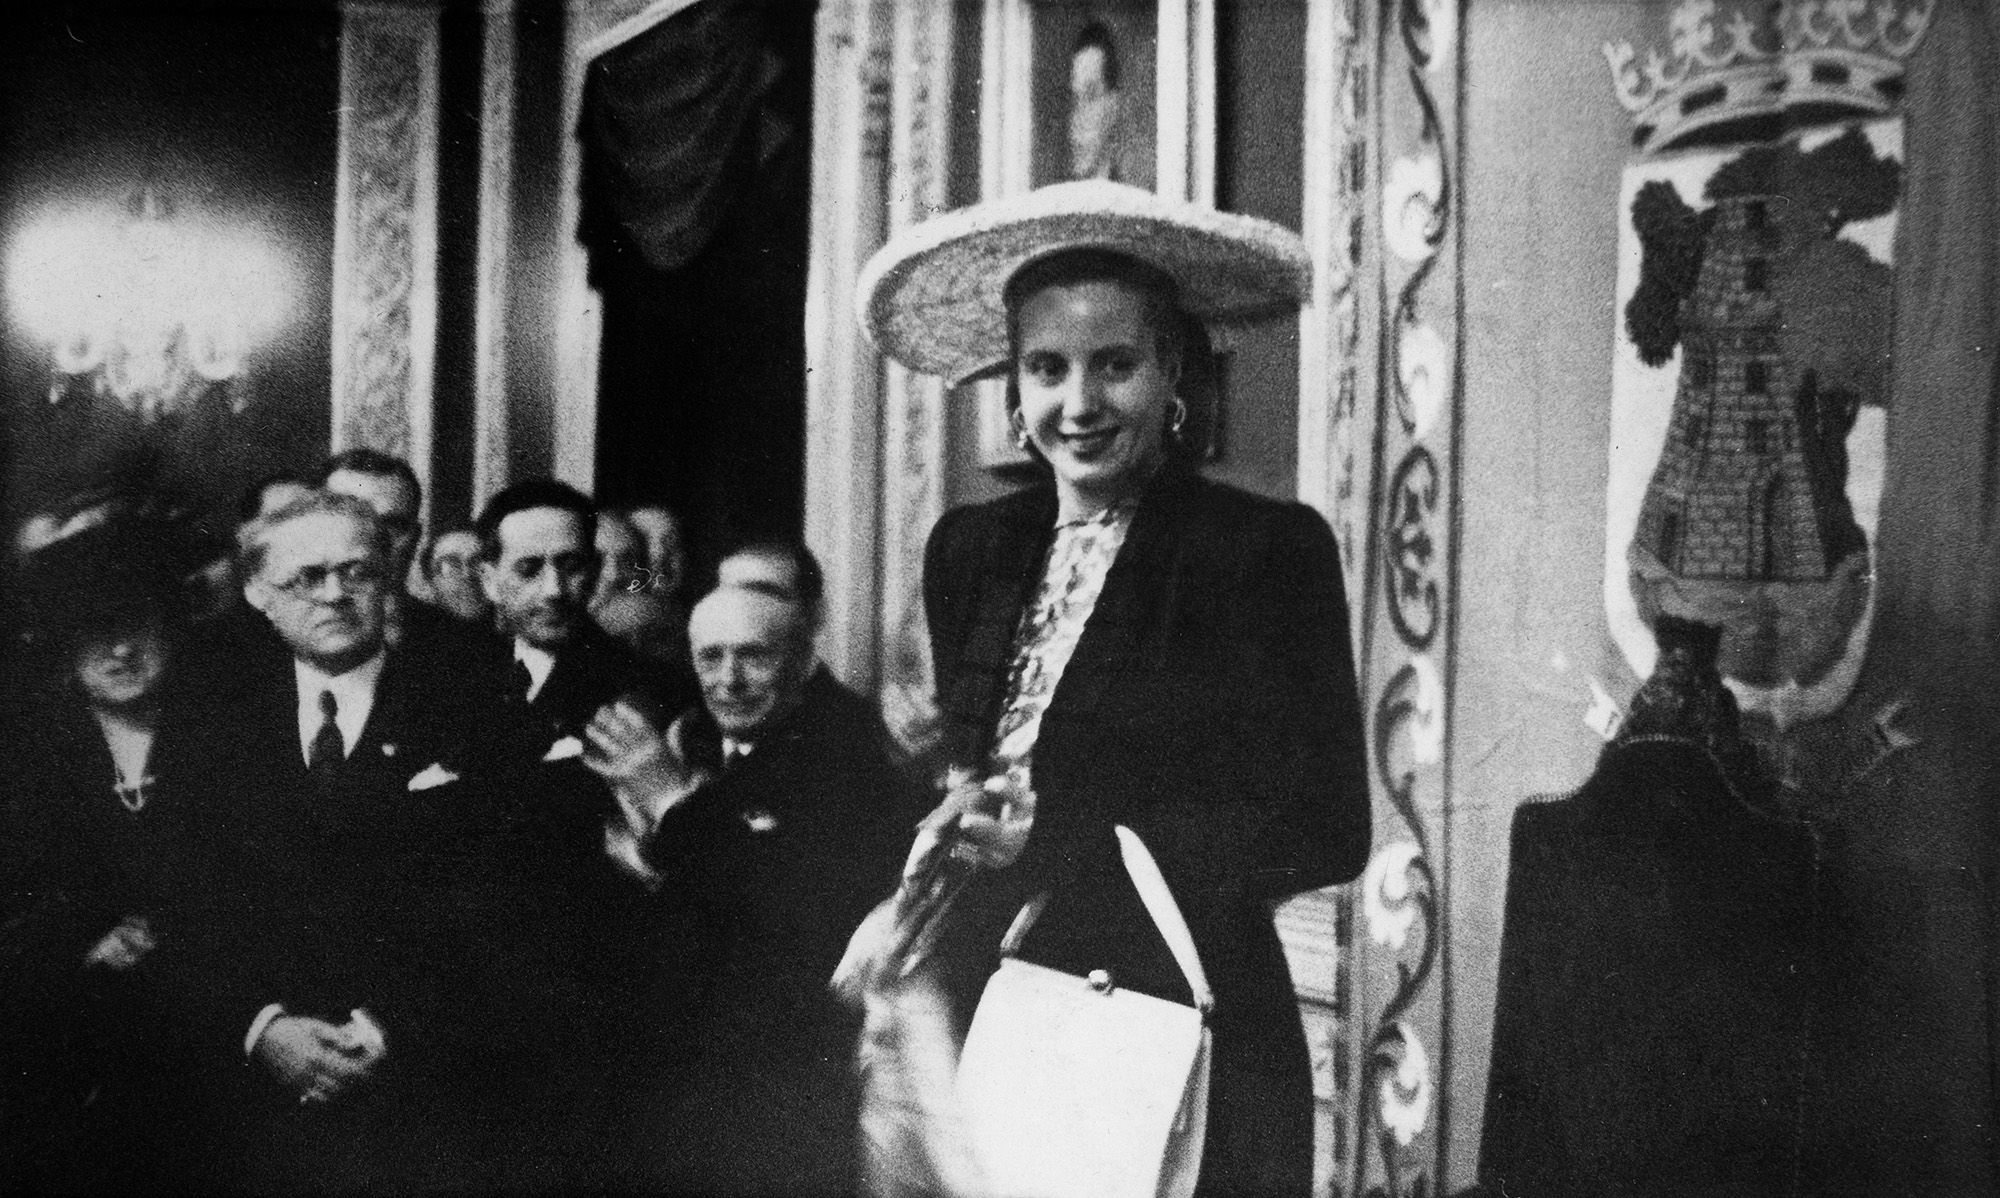 “Evita” Perón - Primeira dama da República Arxentina (1947)